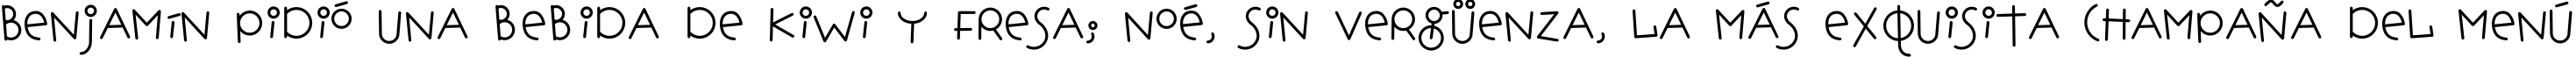 Пример написания шрифтом HopscotchPlain текста на испанском